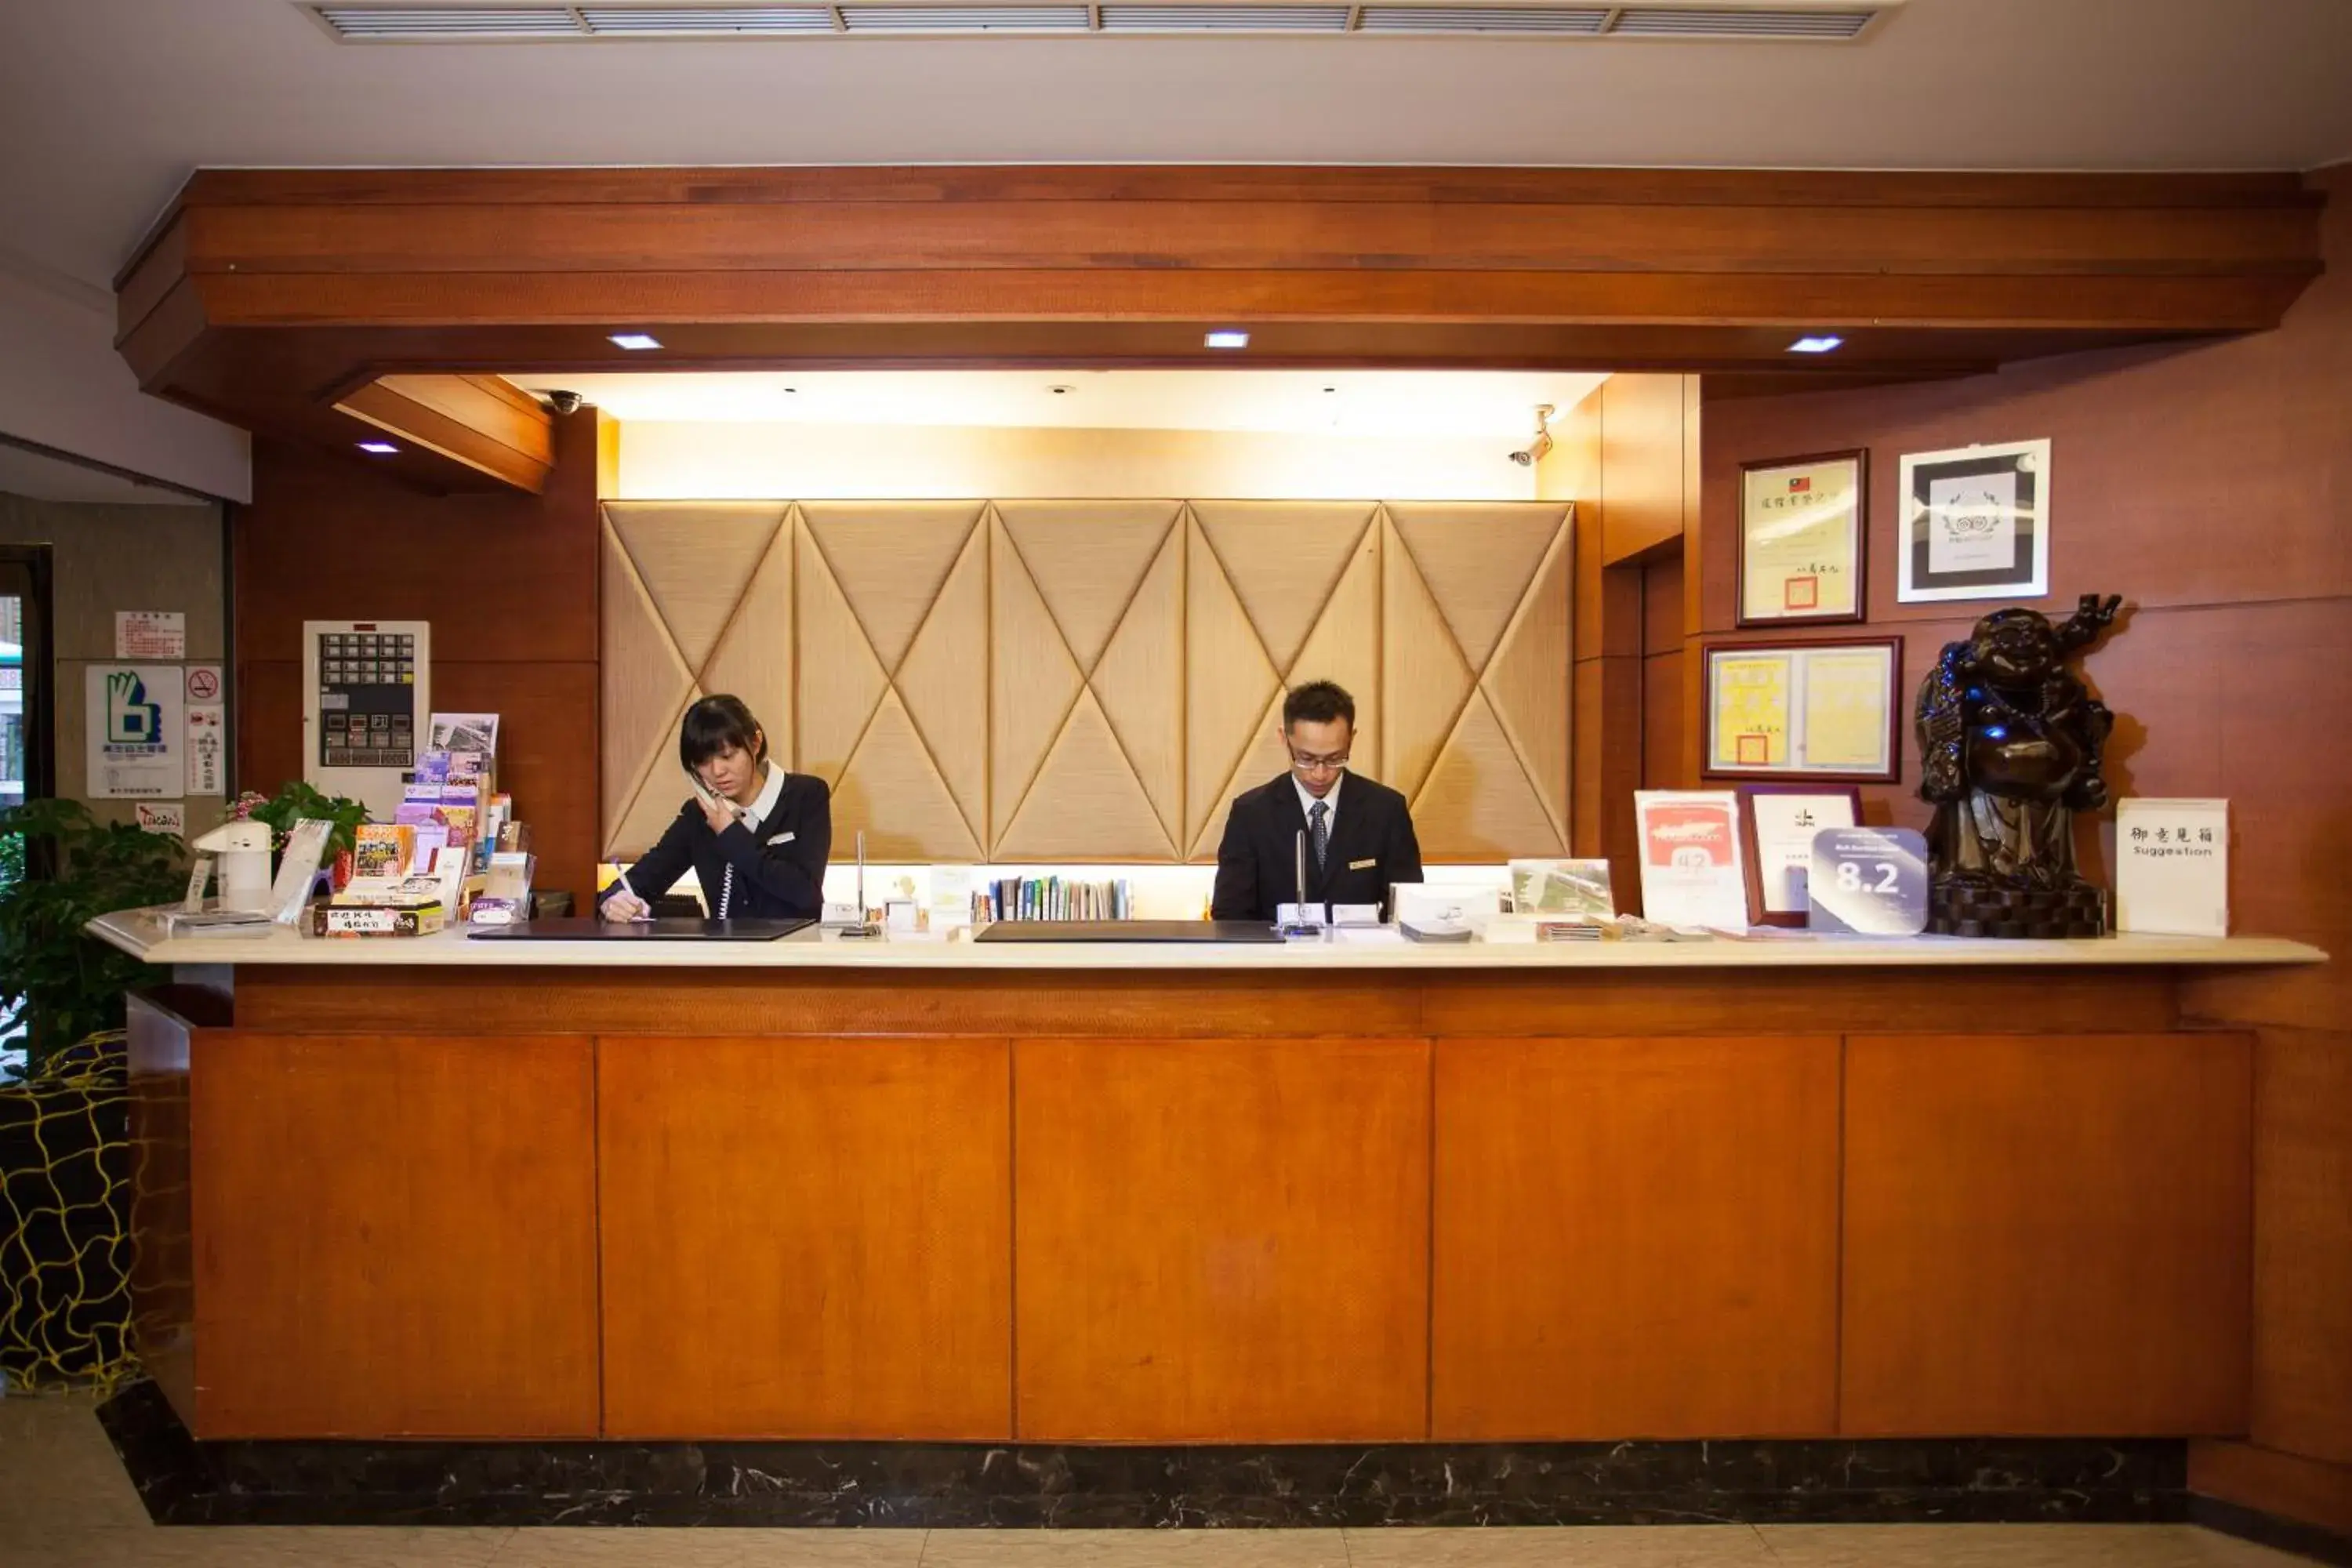 Staff, Lobby/Reception in Rich Garden Hotel